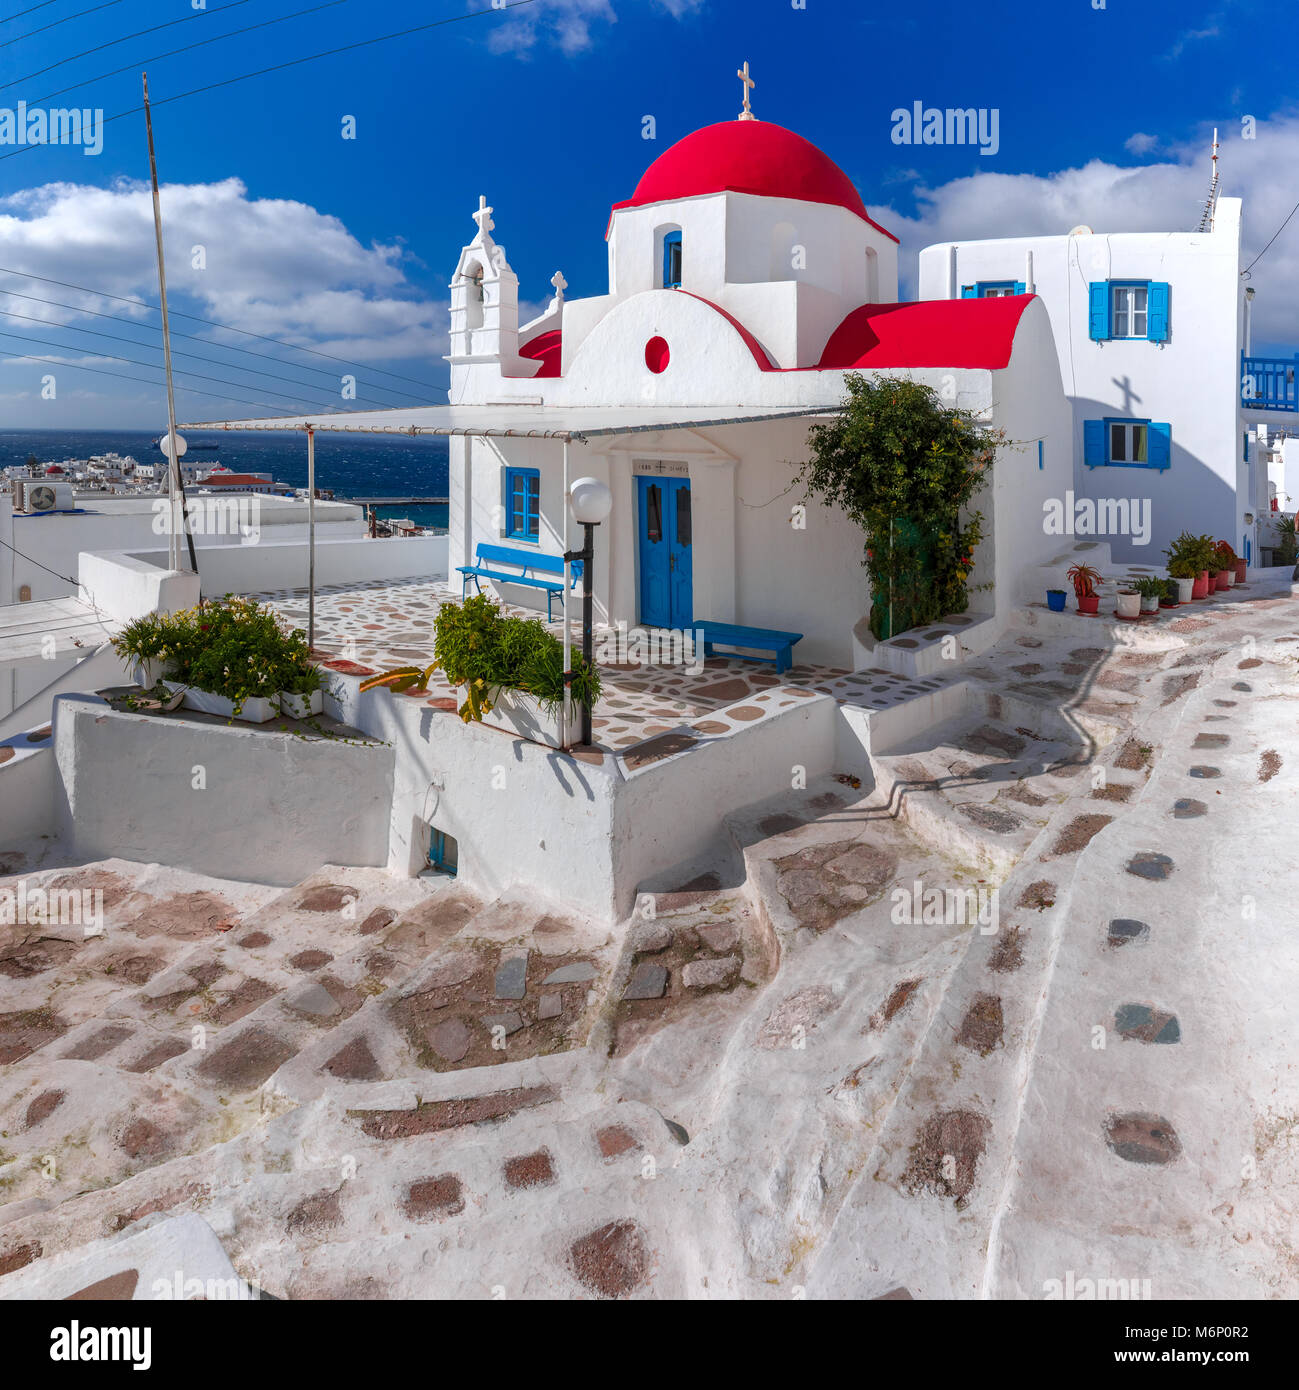 Grec typique église blanche sur l'île de Mykonos, Grèce Banque D'Images